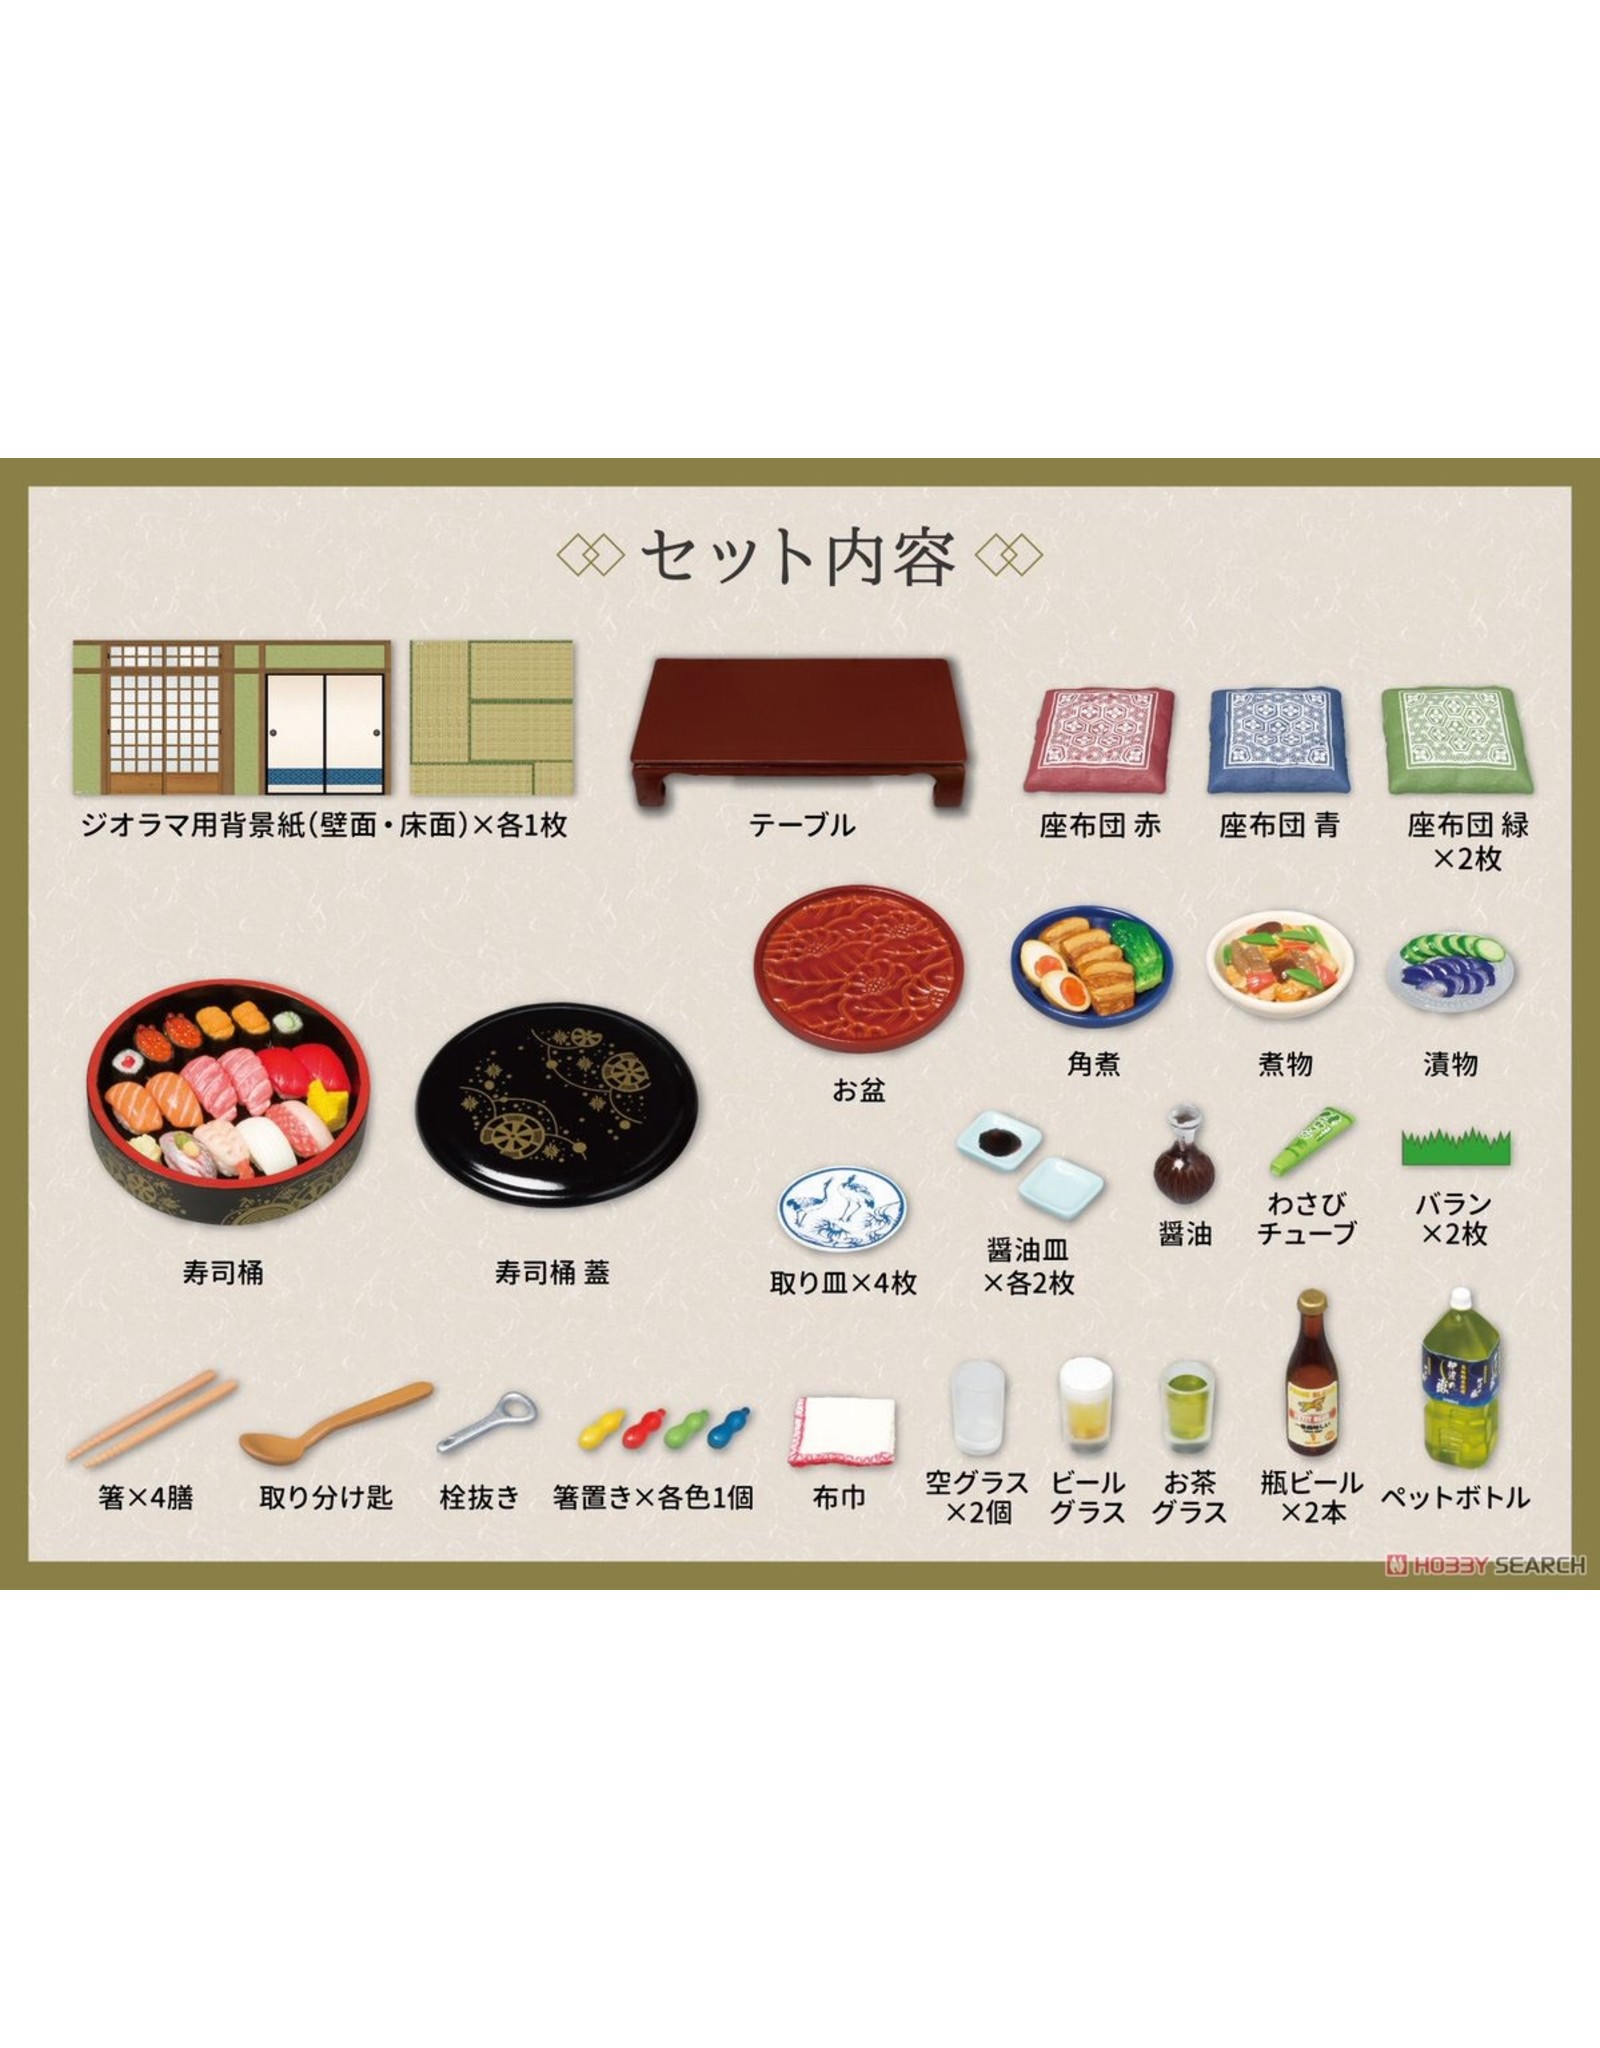 Re-Ment Gorgeous Sushi Set (miniature set)